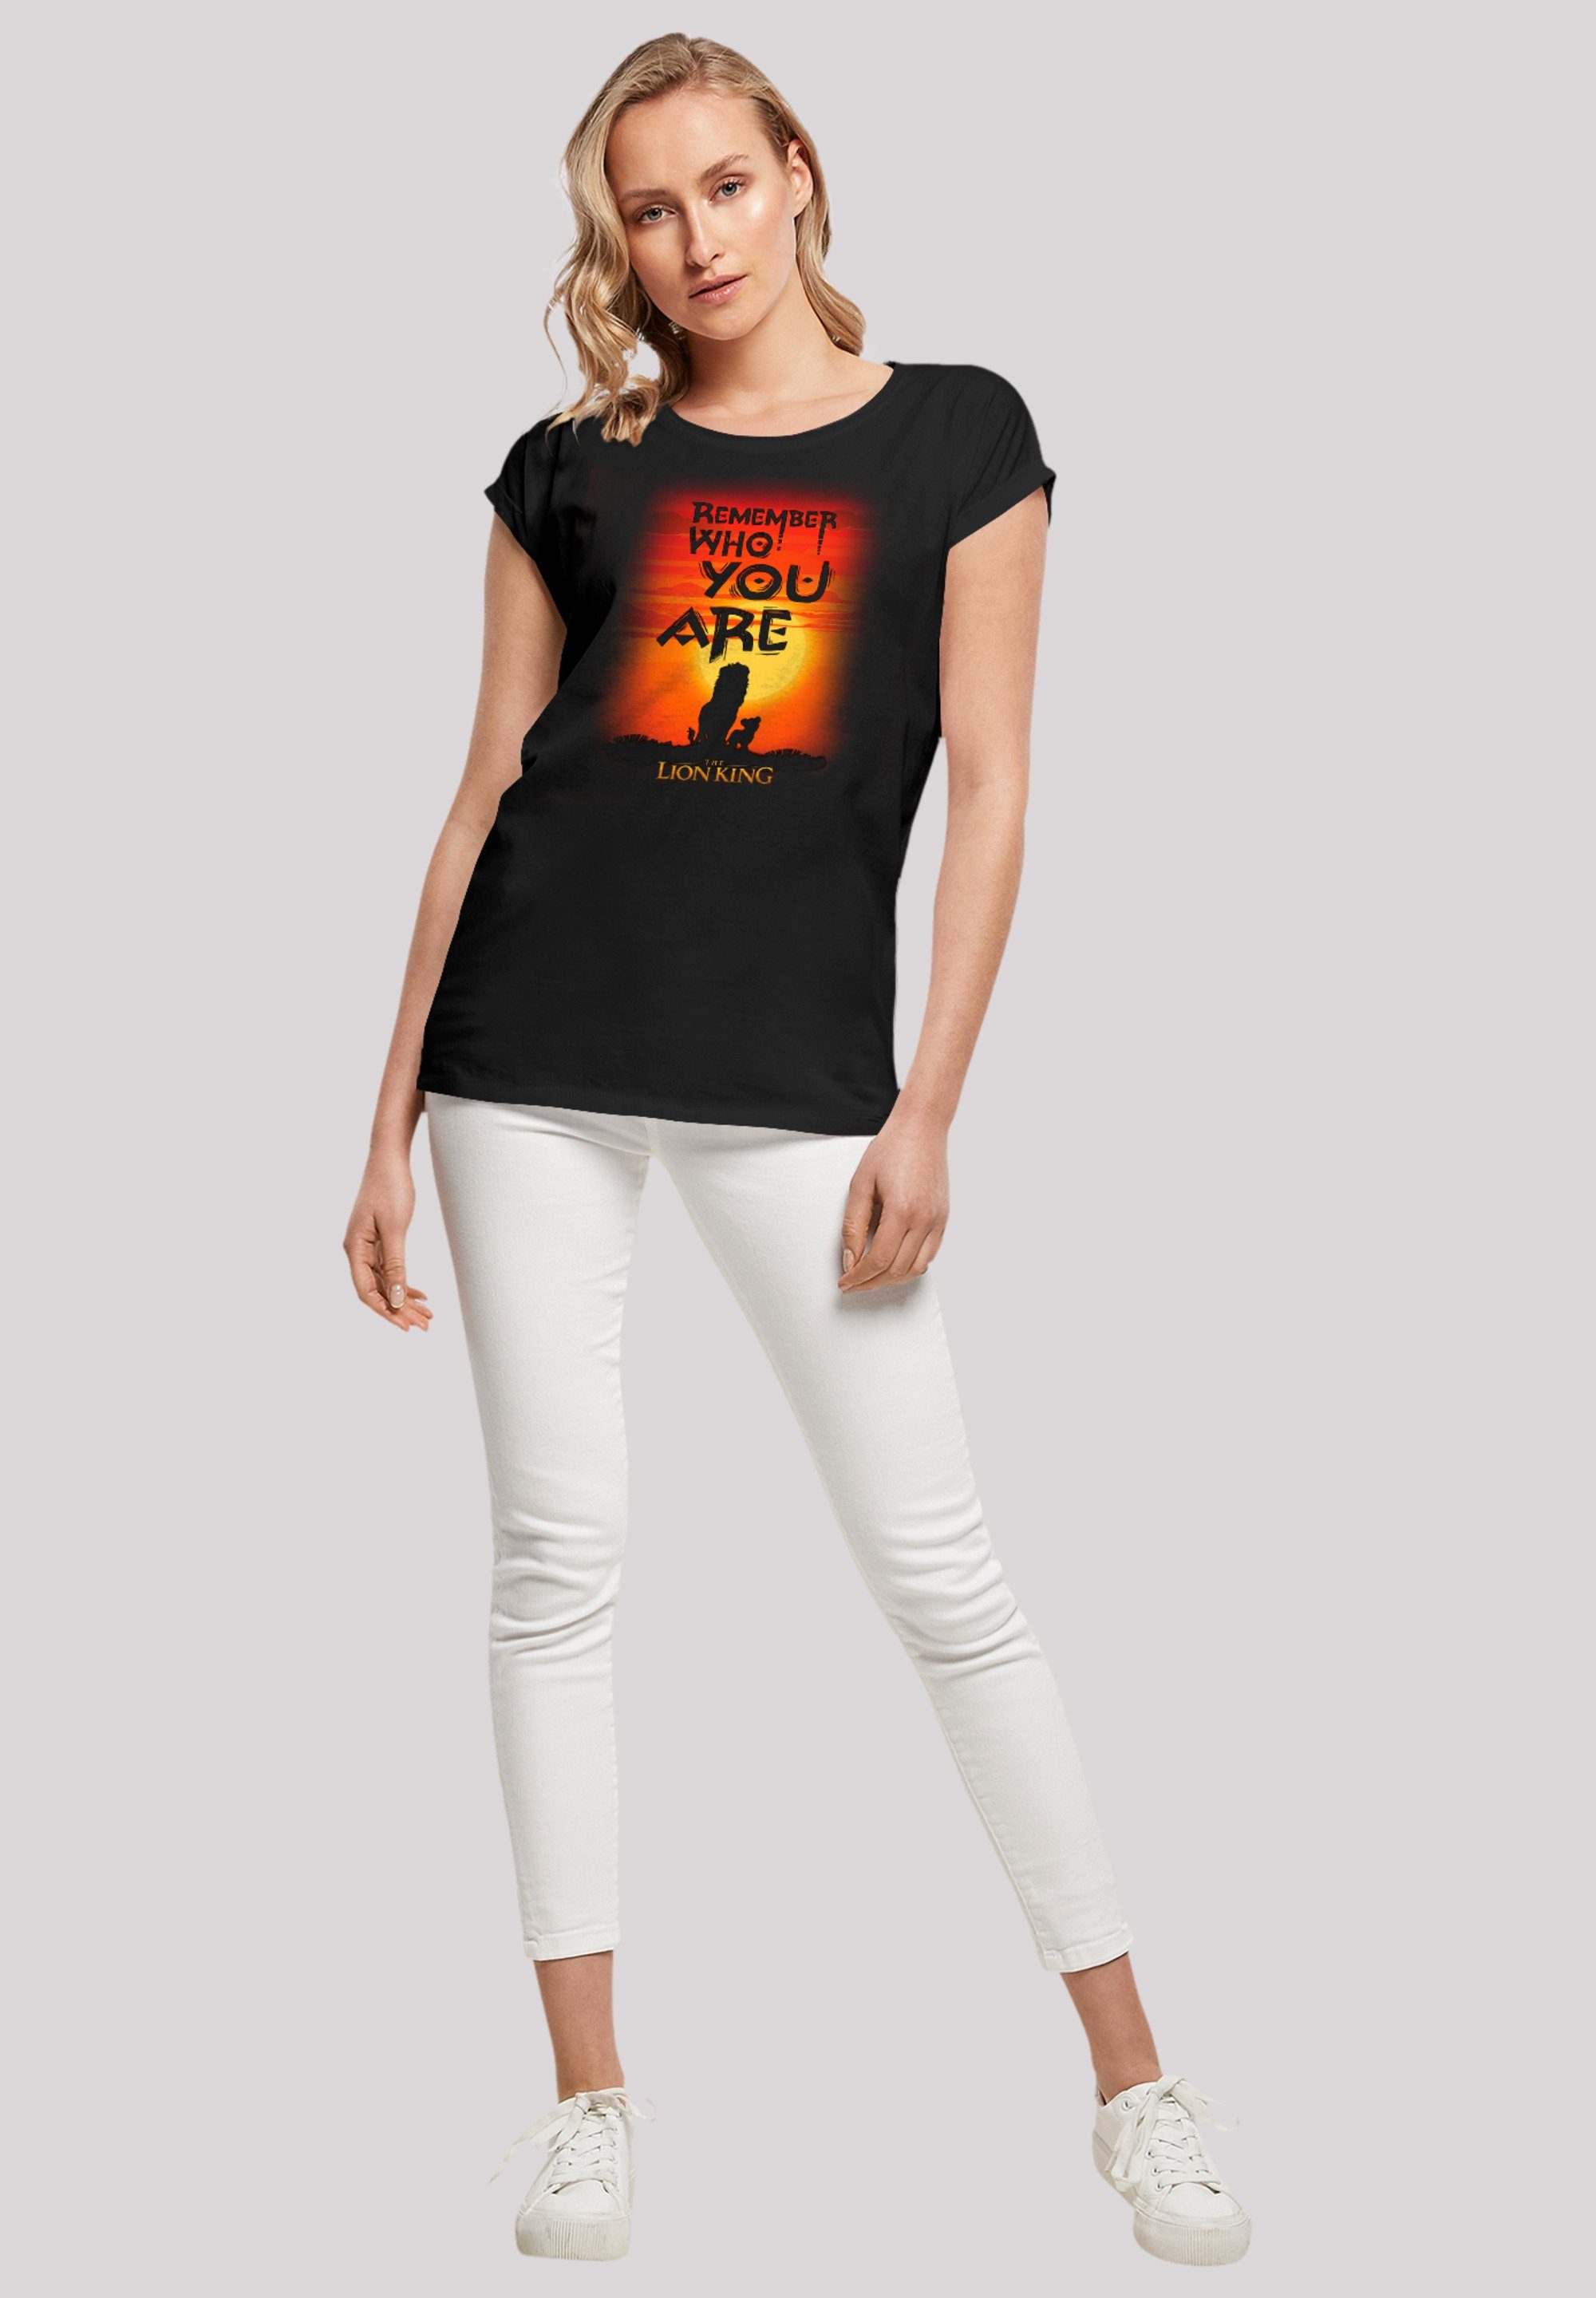 F4NT4STIC T-Shirt Qualität Löwen König Premium Sundown der Disney